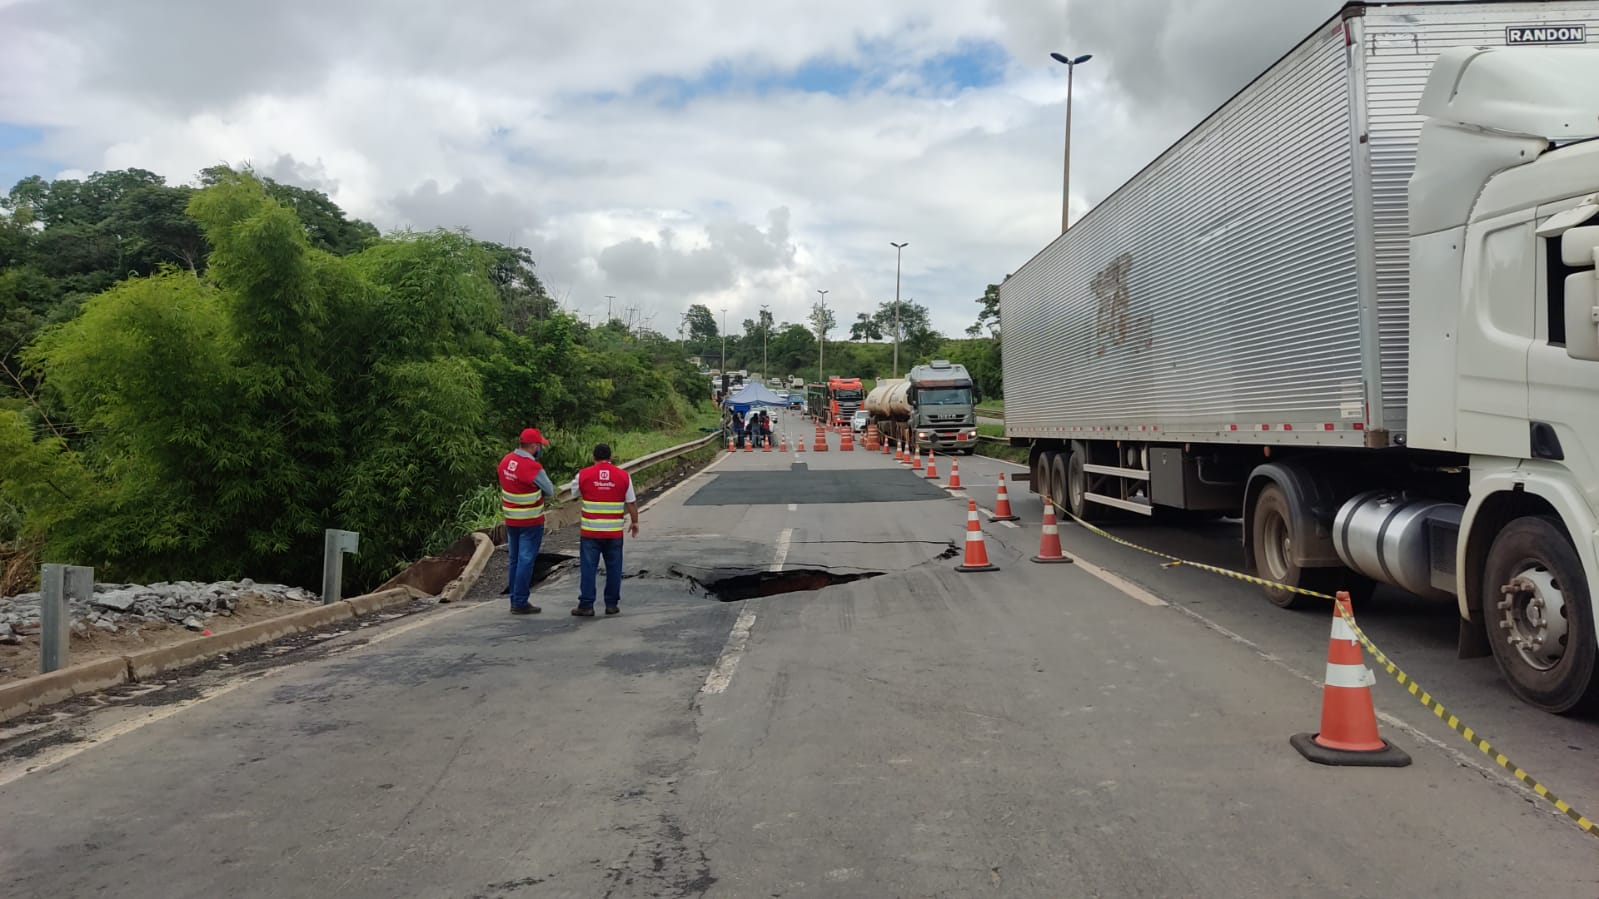 Veículos pesados trafegavam próximo ao buraco na pista da BR-153, em Aparecida (Foto: Defesa Civil - Divulgação)